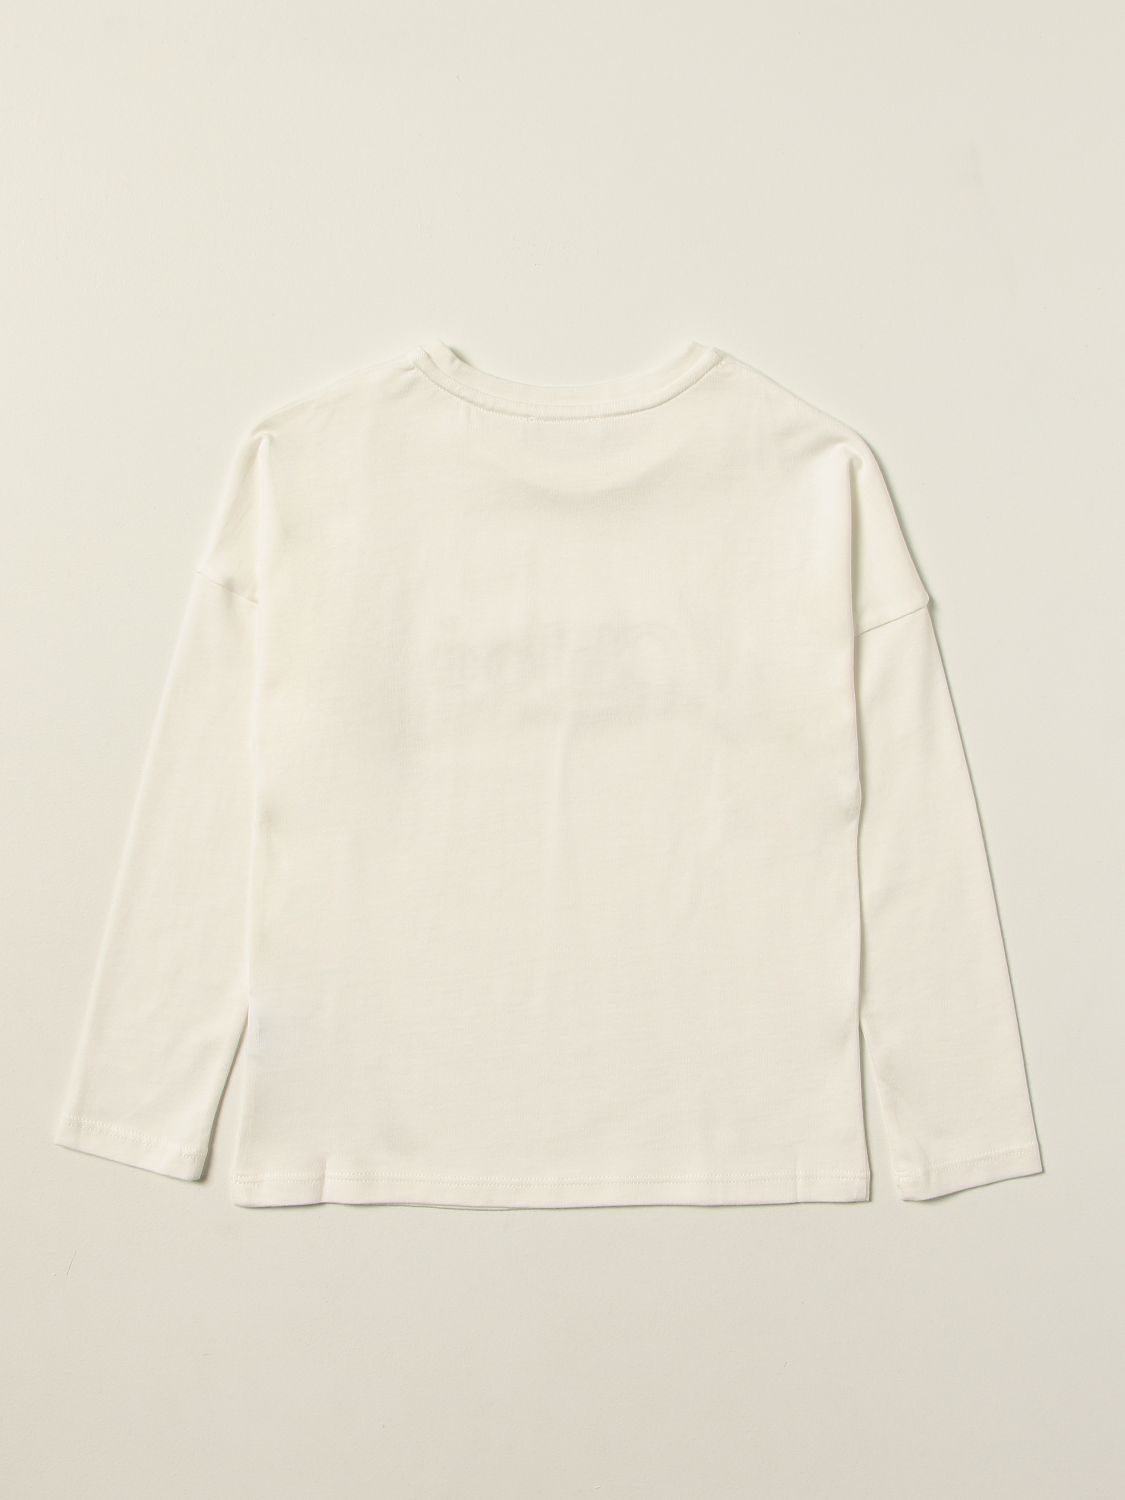 T-shirt Chloé: Chloé T-shirt with logo white 2